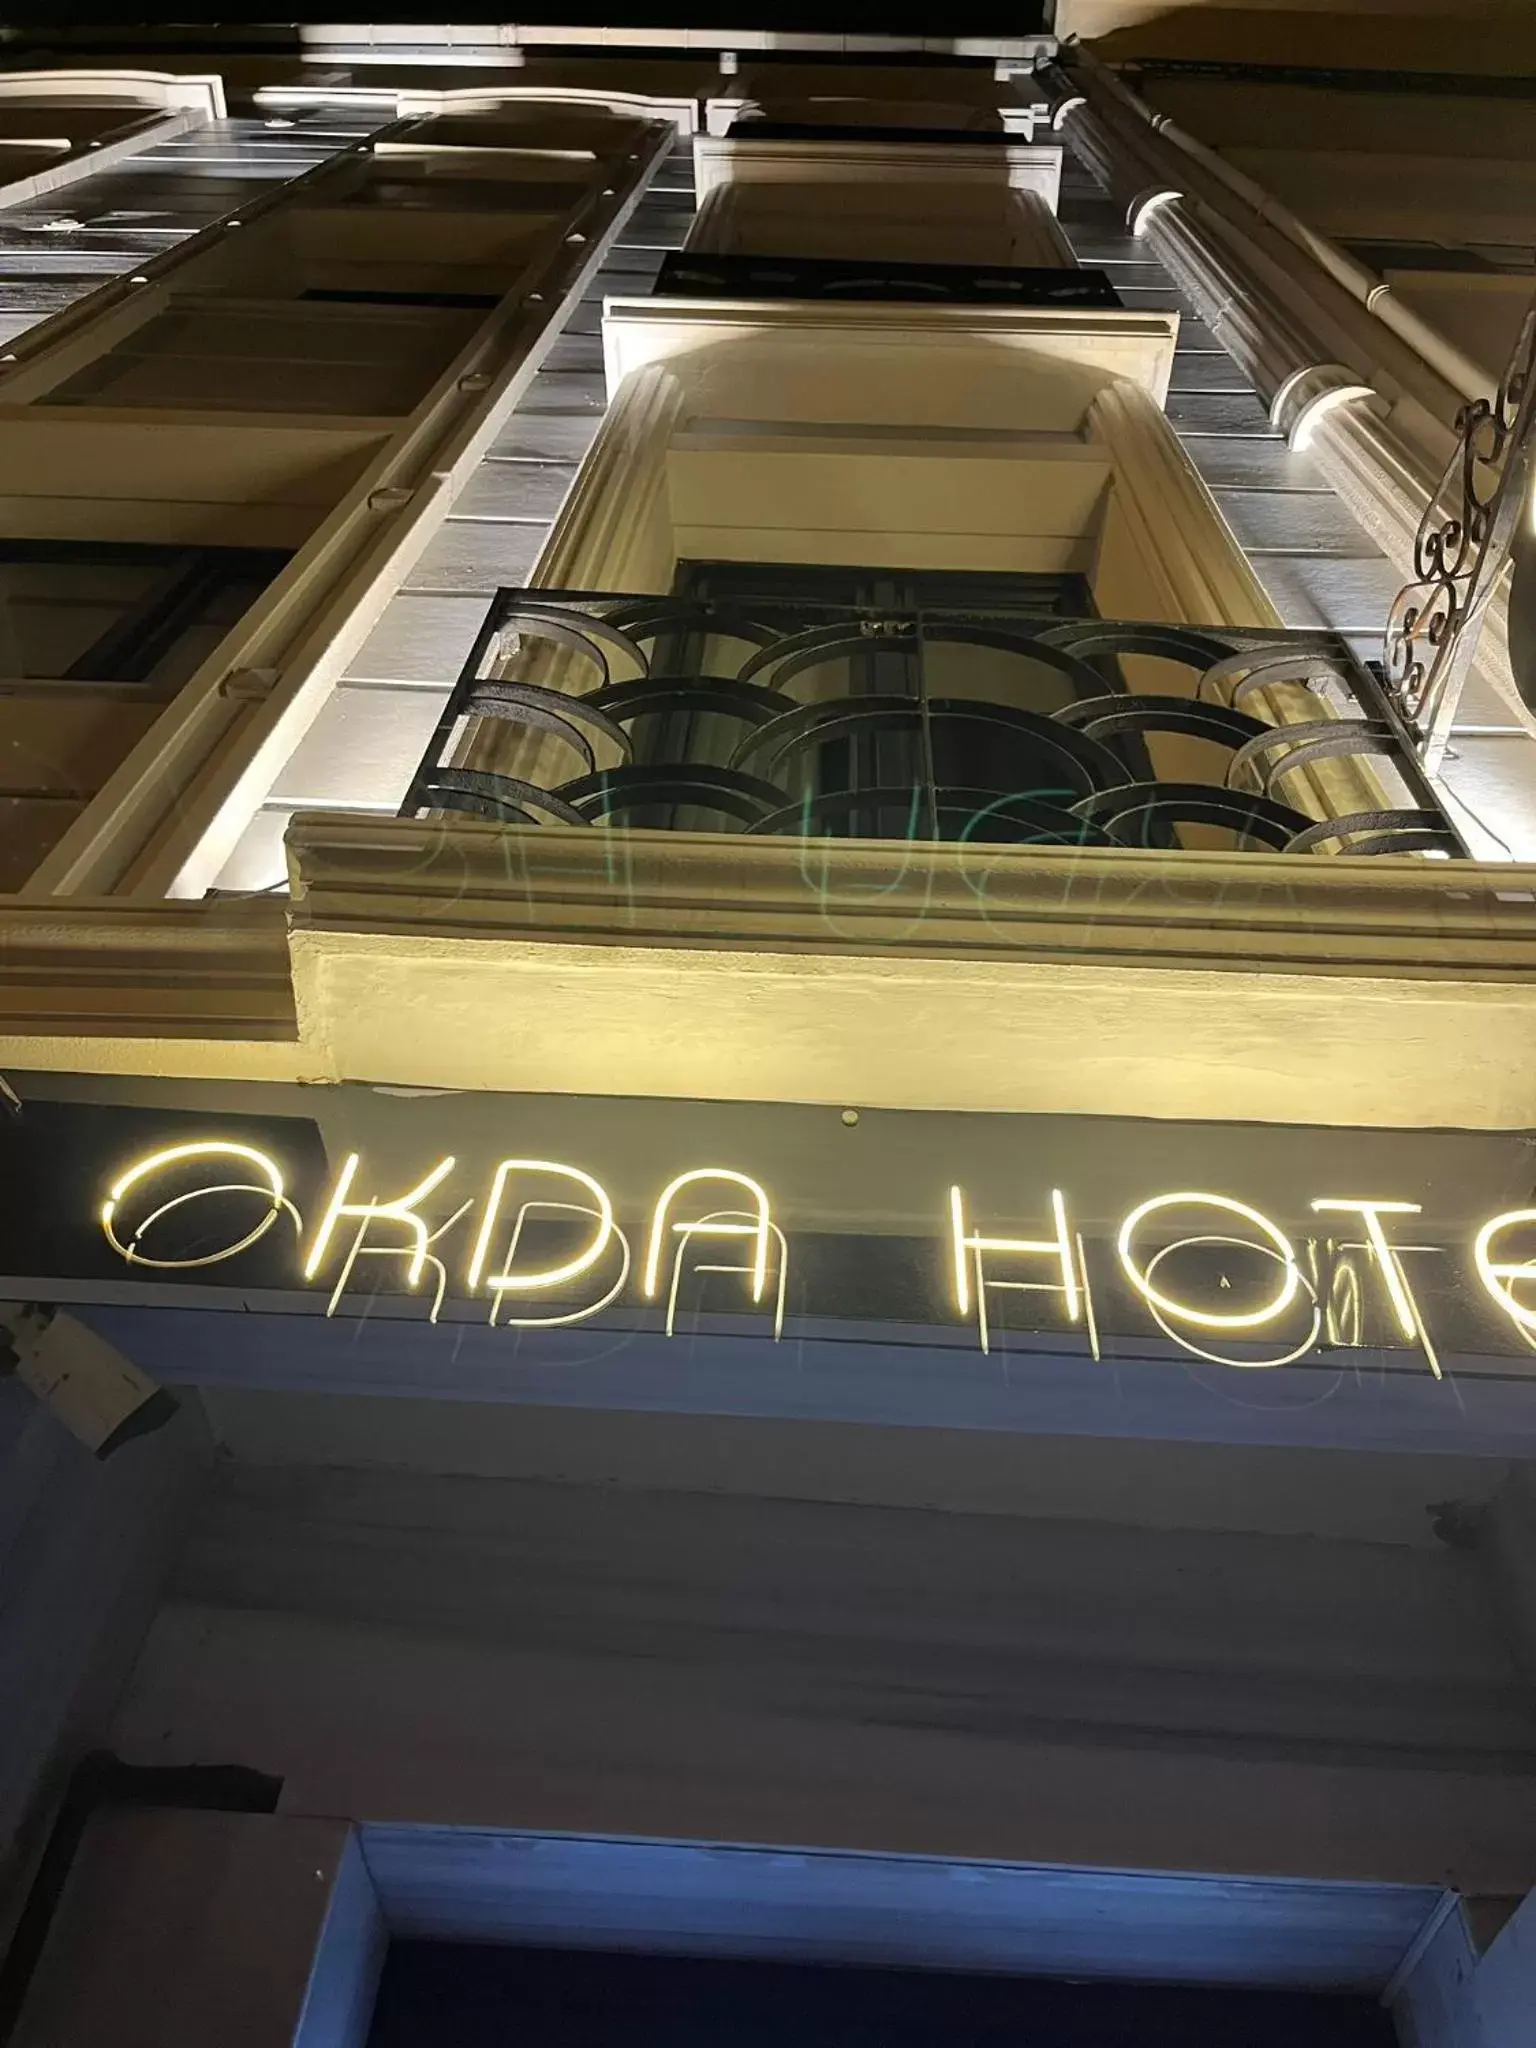 Off site in Okda Hotel